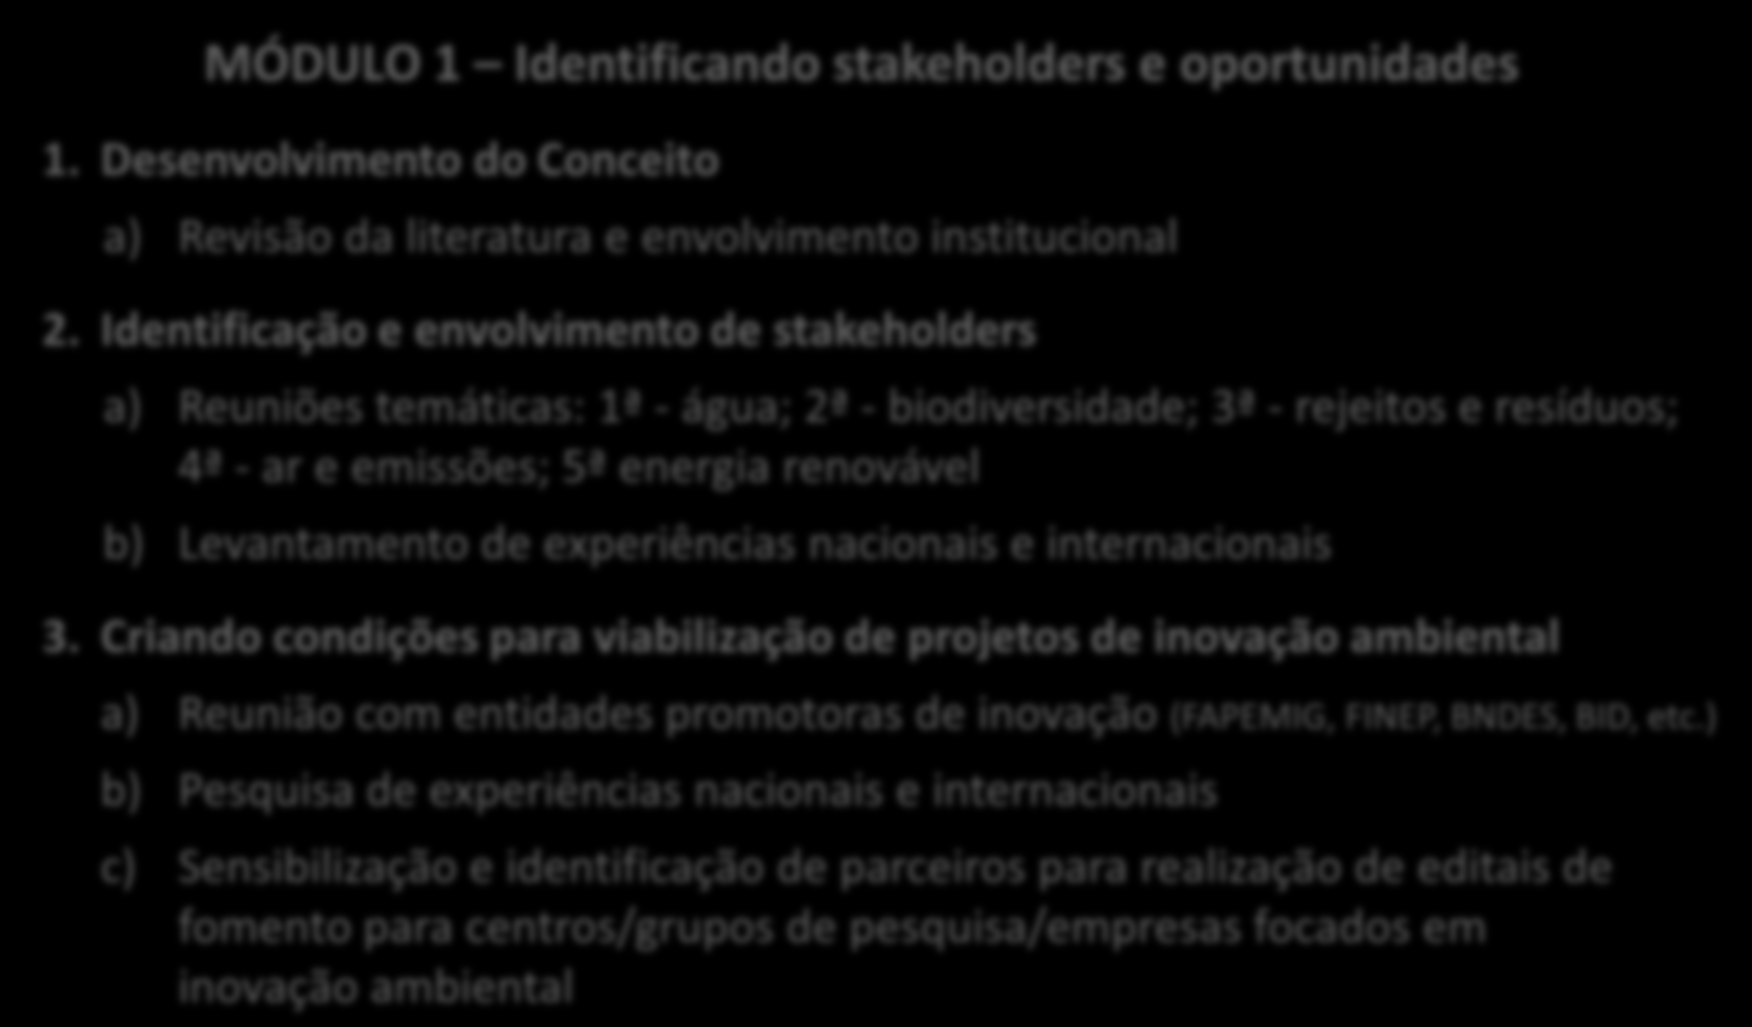 Rede Mineira de Inovação Ambiental: MÓDULO 1 Identificando stakeholders e oportunidades 1. Desenvolvimento do Conceito Etapas do Projeto a) Revisão da literatura e envolvimento institucional 2.